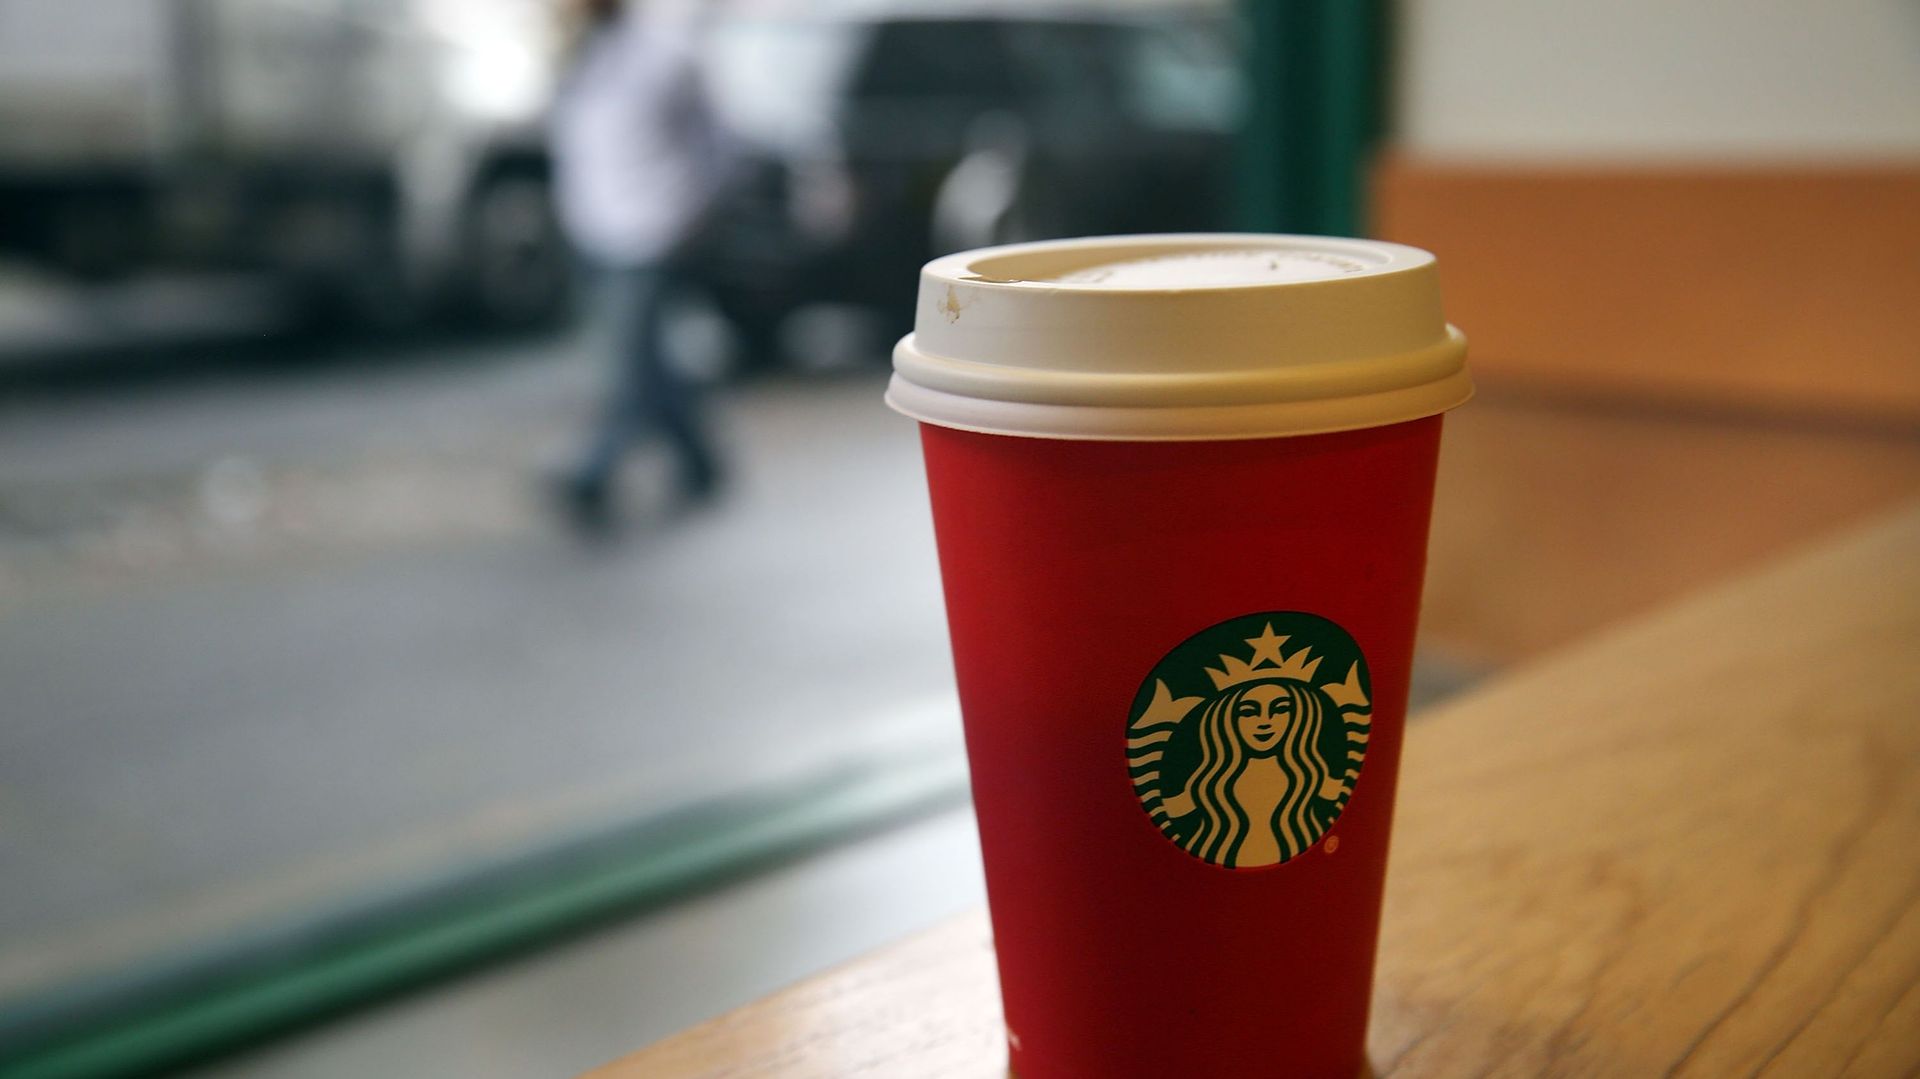 La Commission européenne exige que Starbucks rembourse des aides fiscales reçues "illégalement" aux Pays-Bas.